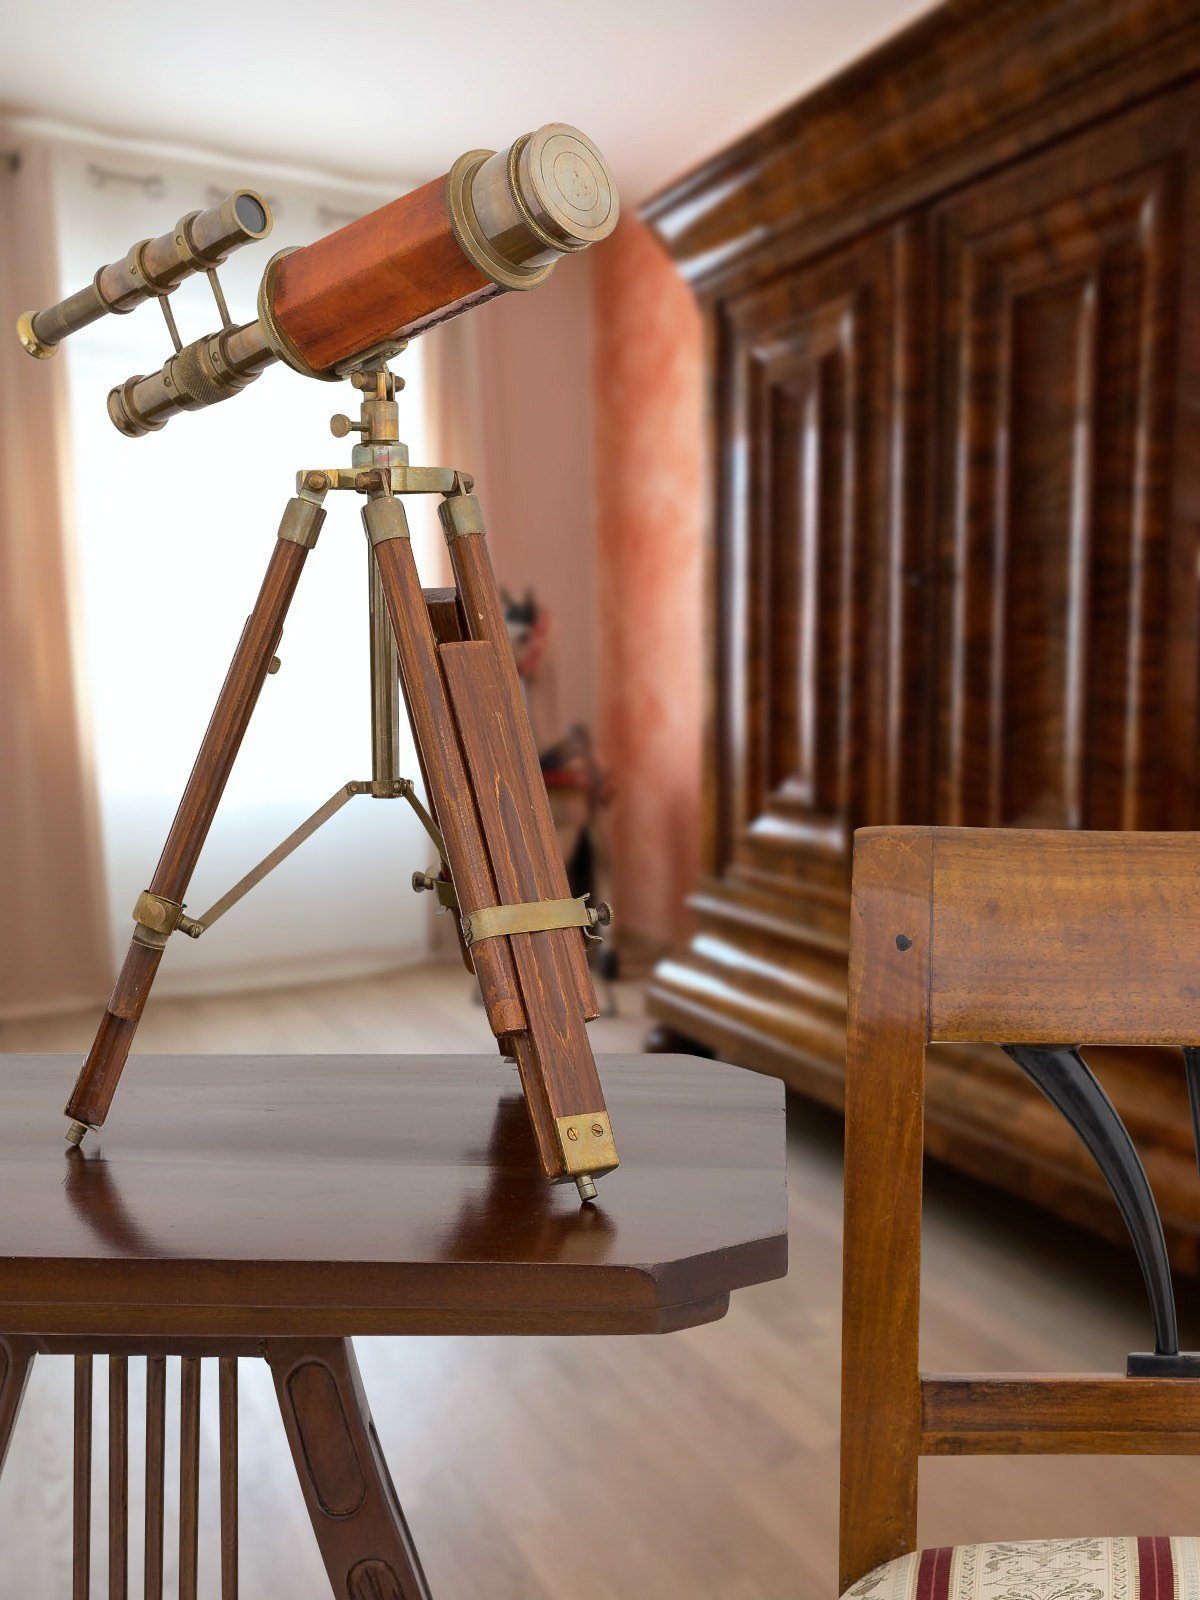 Aubaho Teleskop Antik-Stil Fernglas Doppel-Teleskop Messing Holz-Stativ mit Fernrohr